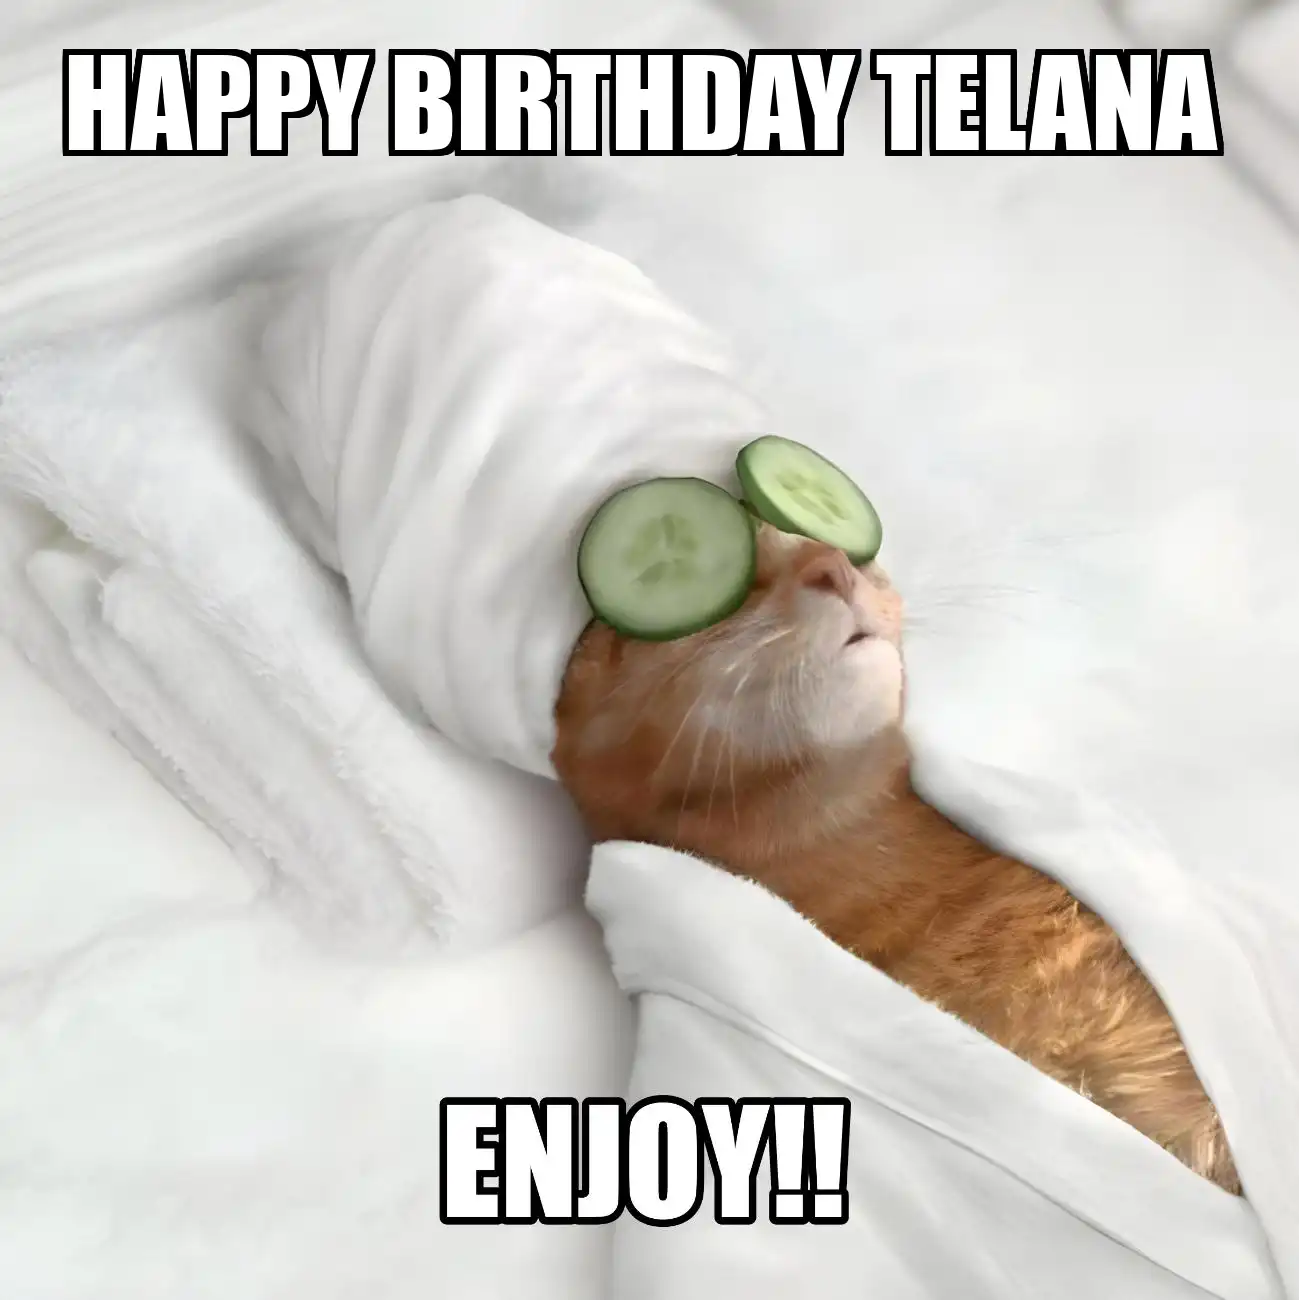 Happy Birthday Telana Enjoy Cat Meme